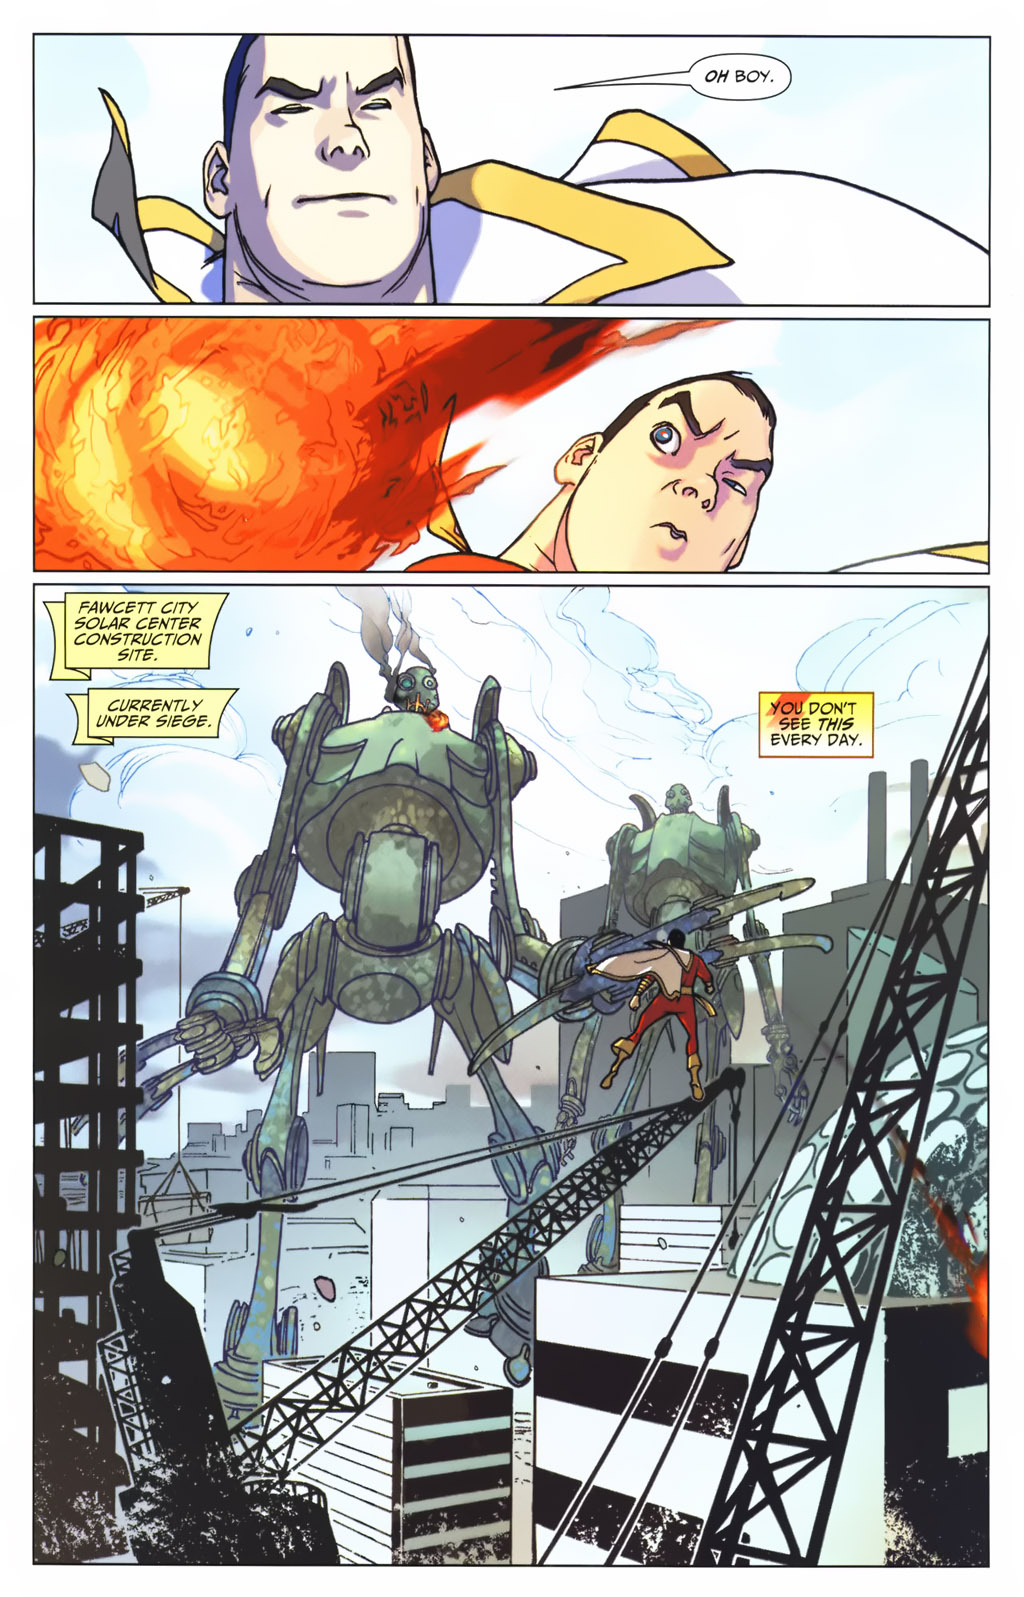 Captain Marvel VS  2 Giant Fire-Breathing Robots 